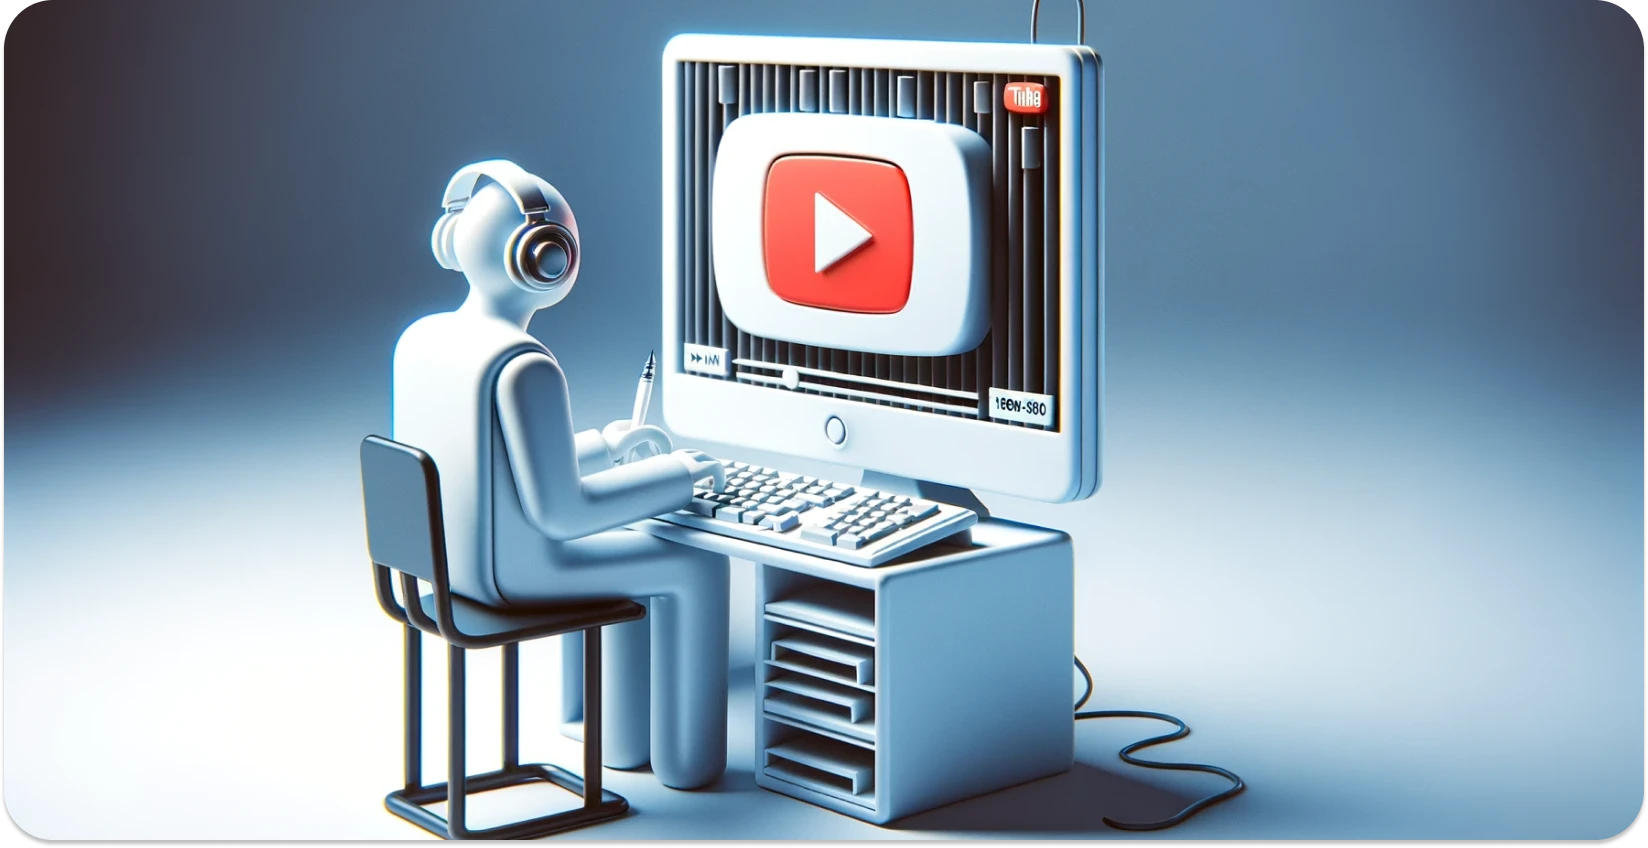 Stilisierte Illustration einer Person, die einen Computer mit der YouTube-Oberfläche benutzt, wobei der Schwerpunkt auf der Transkription liegt.